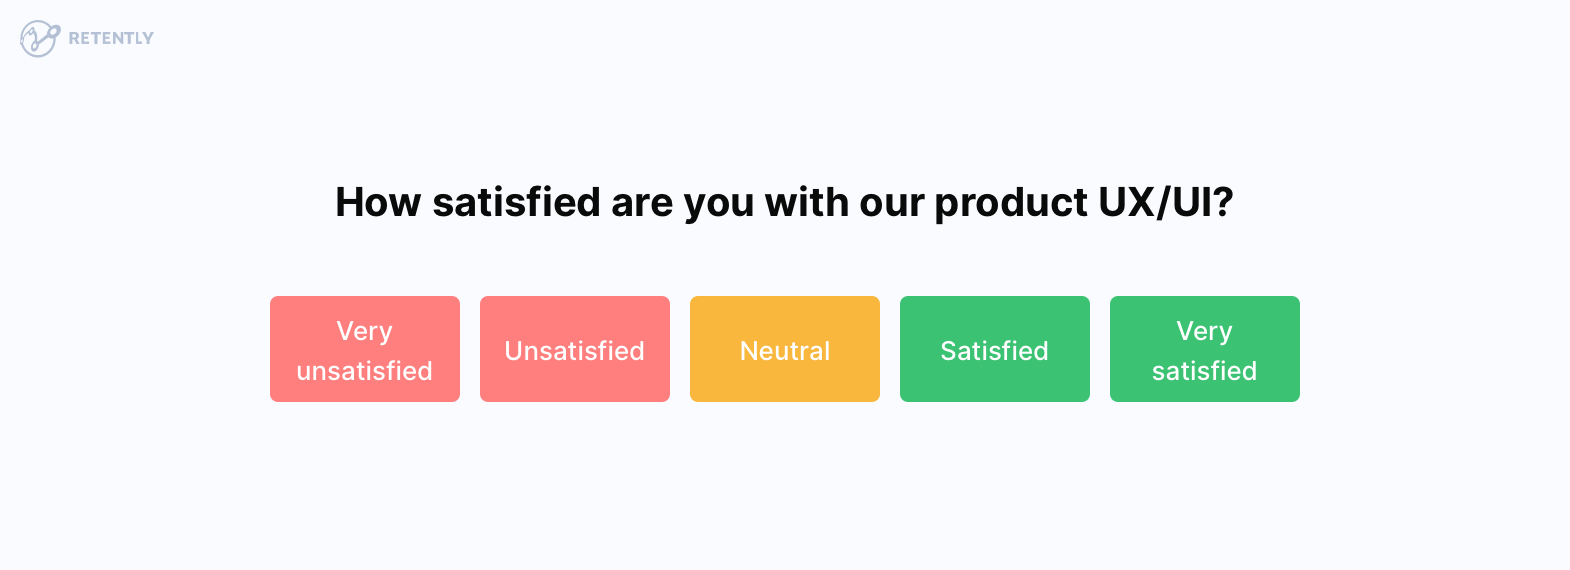 CSAT product usability survey